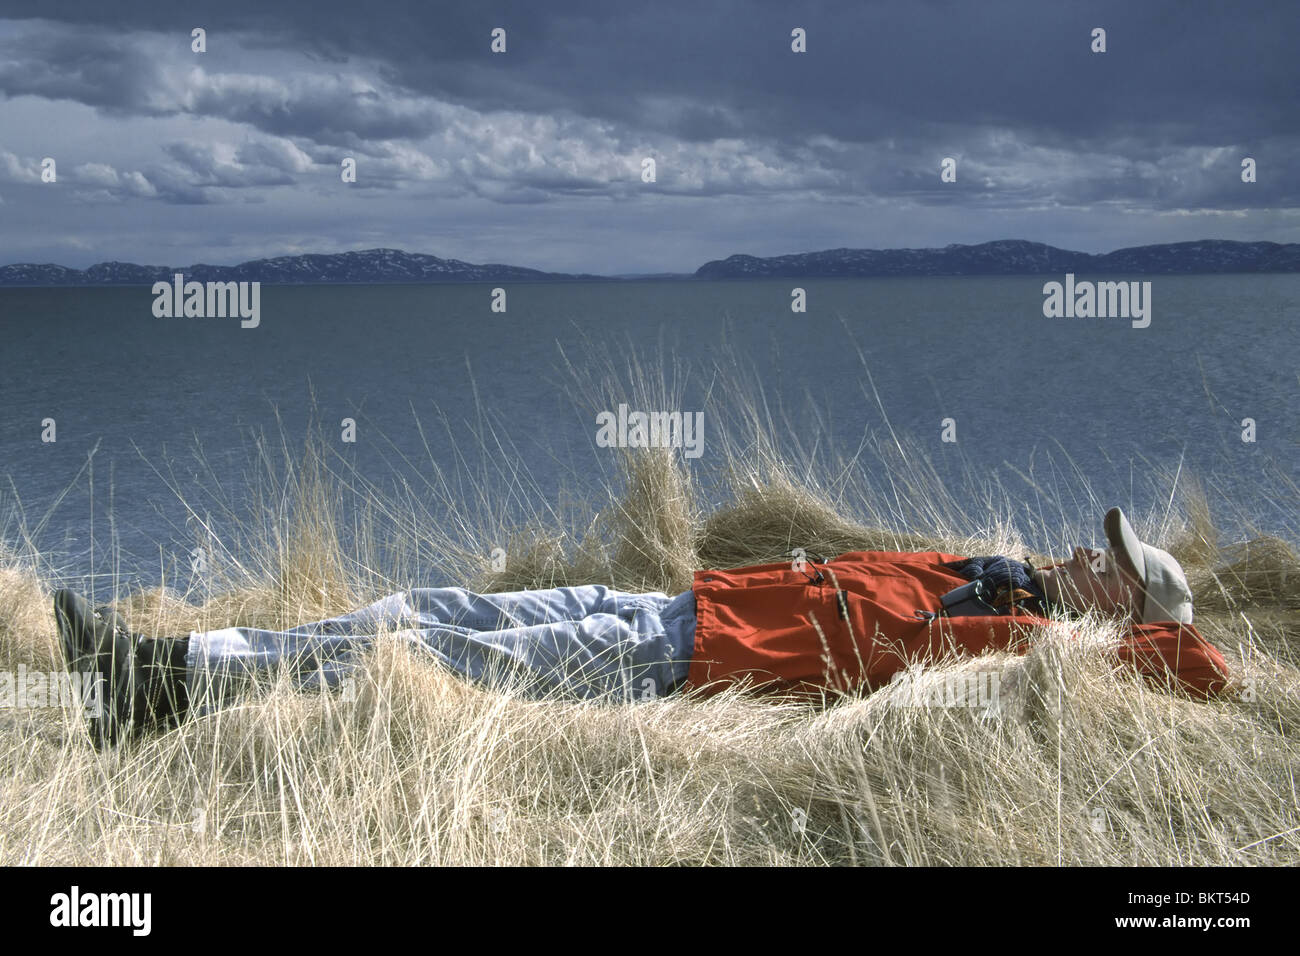 Uitrustende vogelkijker in gras langs kustlijn in Varangerfjord, Noorwegen, ScandinaviÃ« Relaxing birdwatcher in grass along coastline of Varangerfjord, Norway, Scandinavia Stock Photo